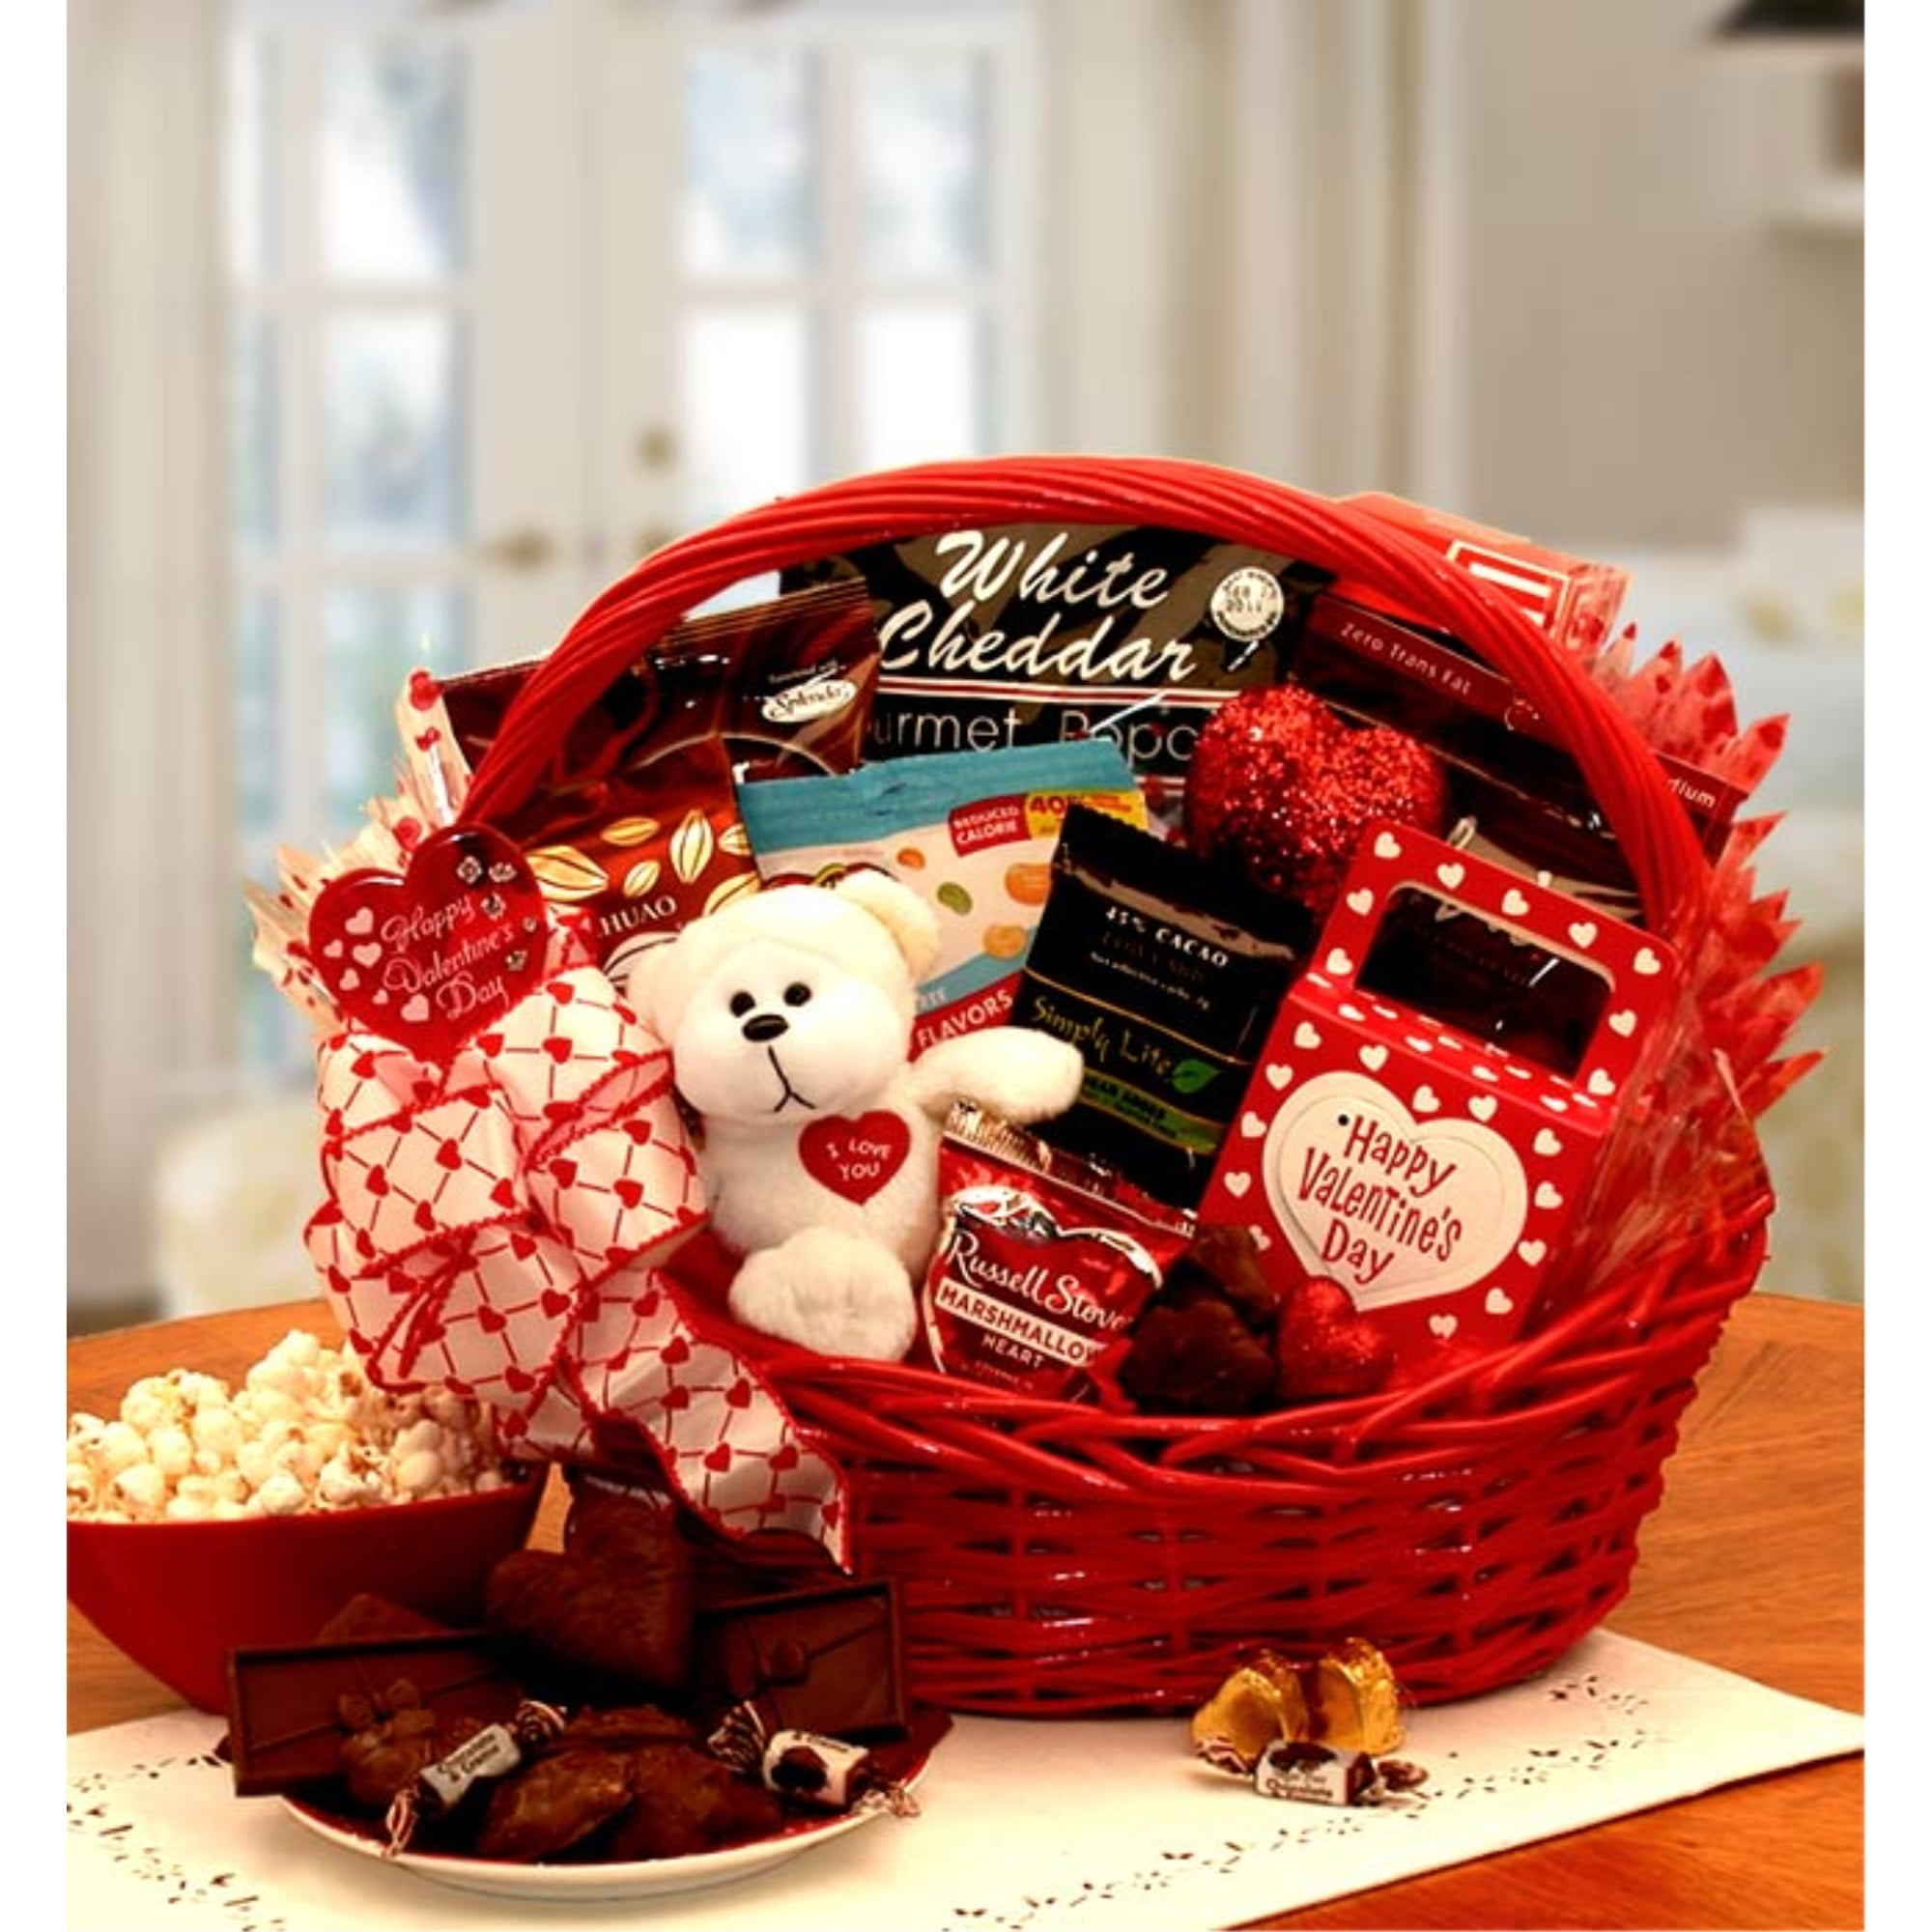 Best Valentine's Day Gift Baskets - AskMen